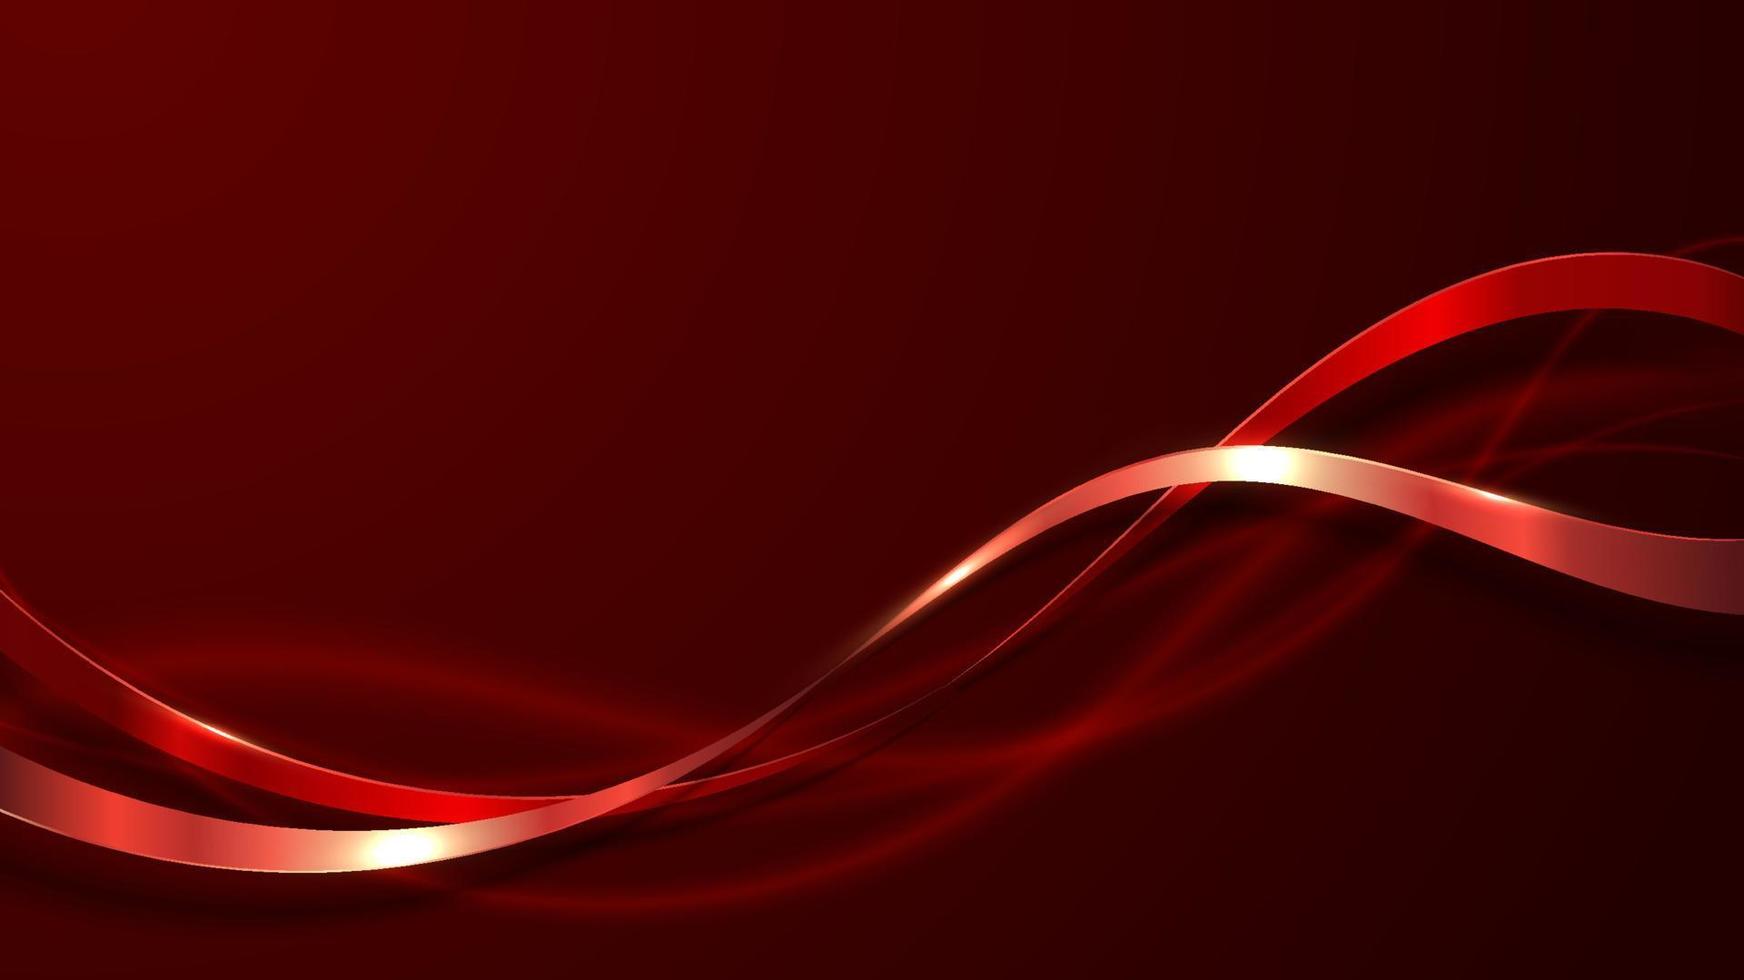 astratto elegante 3d lusso colore rosso nastro linea d'onda decorazione e illuminazione glitter su sfondo rosso sfumato vettore